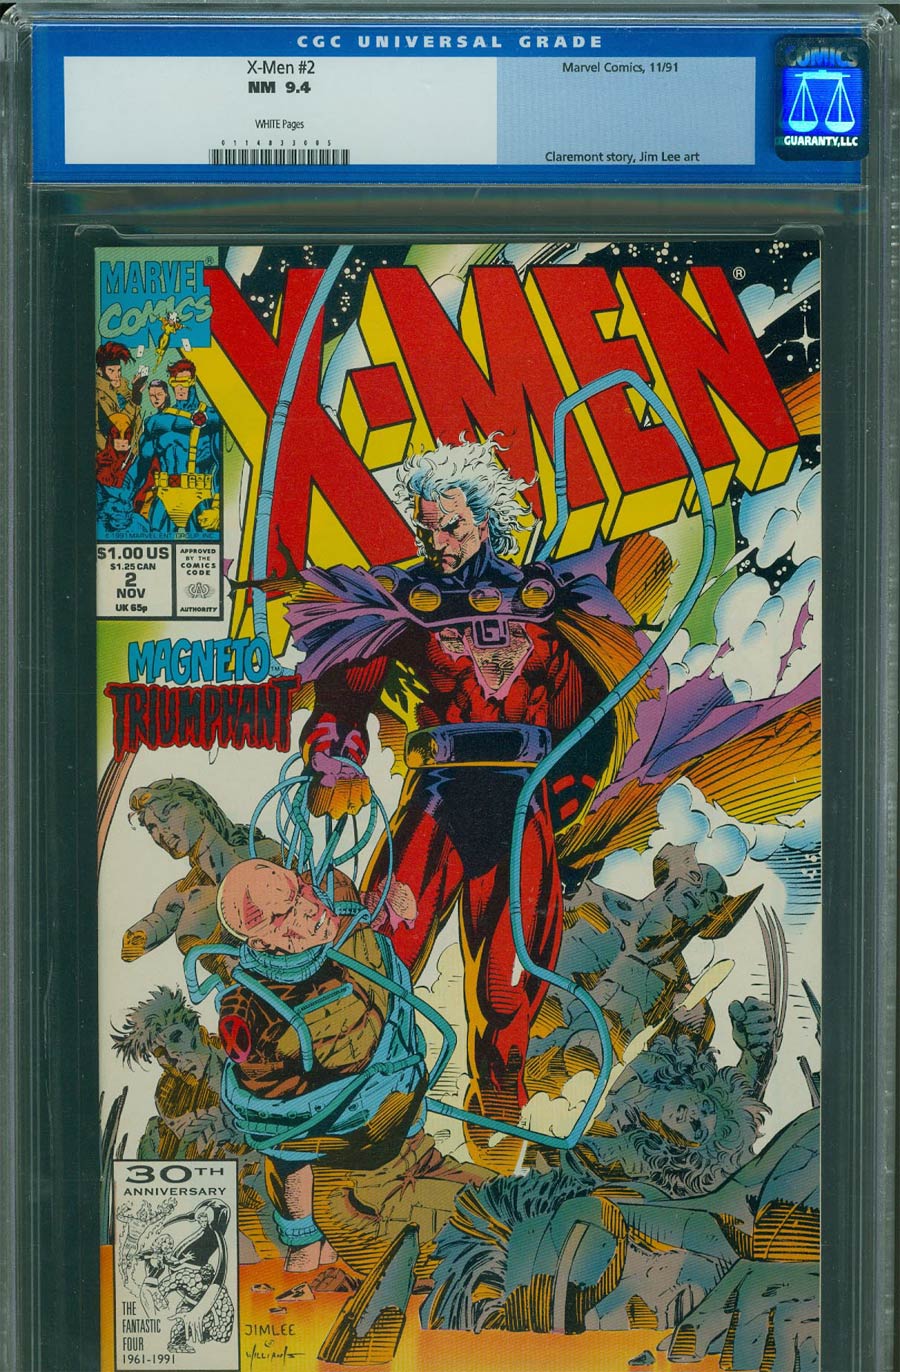 X-Men Vol 2 #2 Cover C CGC 9.4